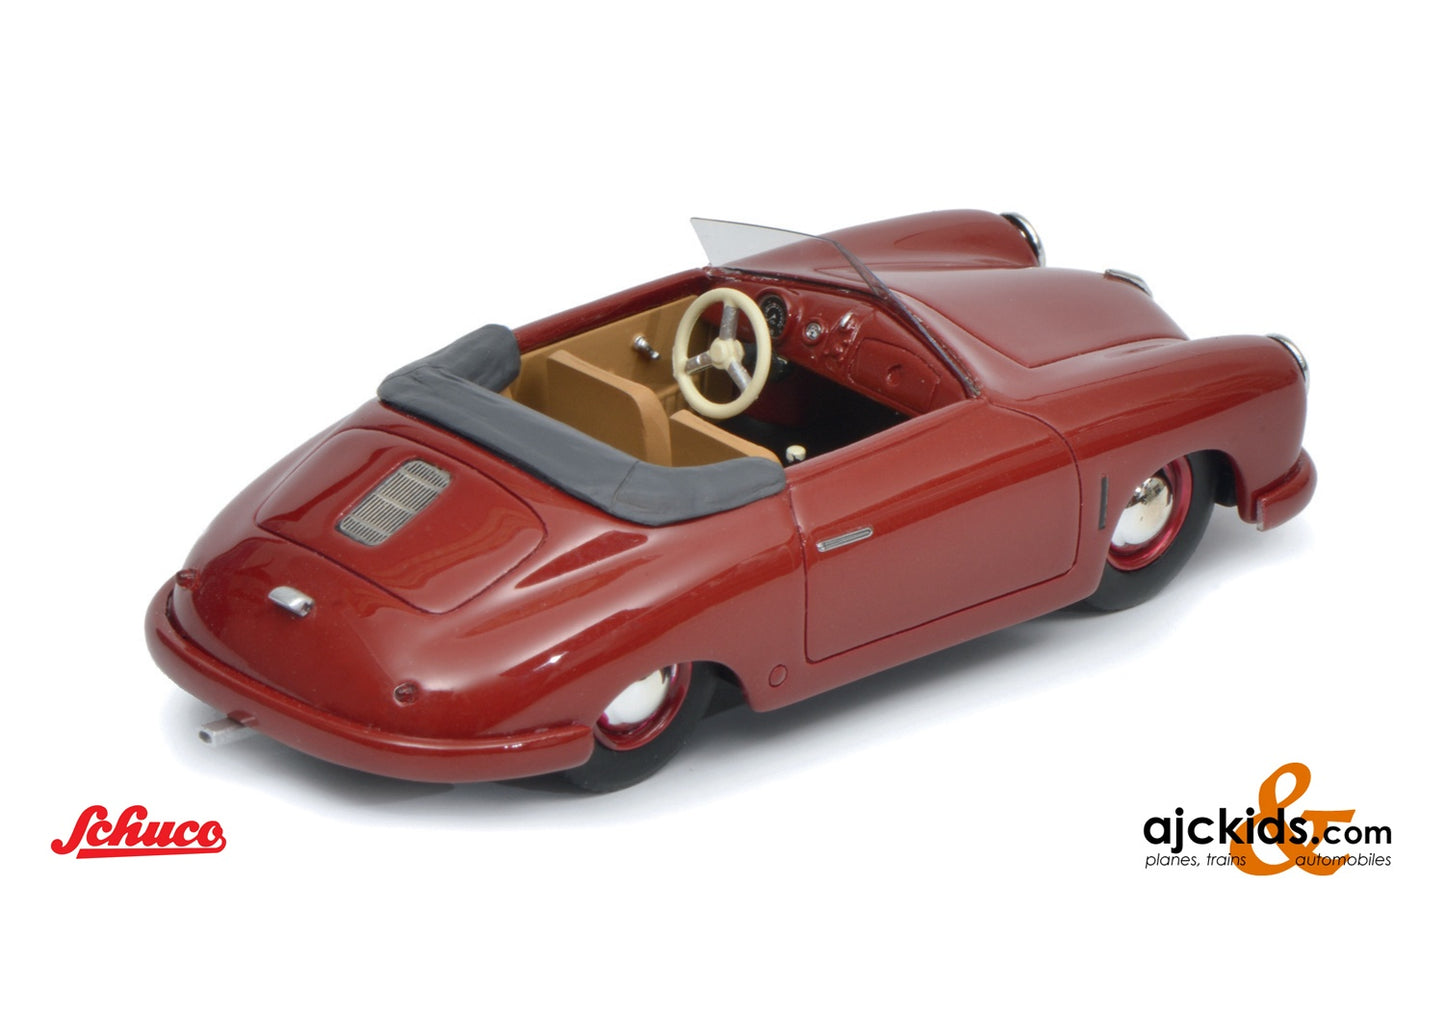 Schuco 450025800 - Porsche 356 Gmünd red 1:18